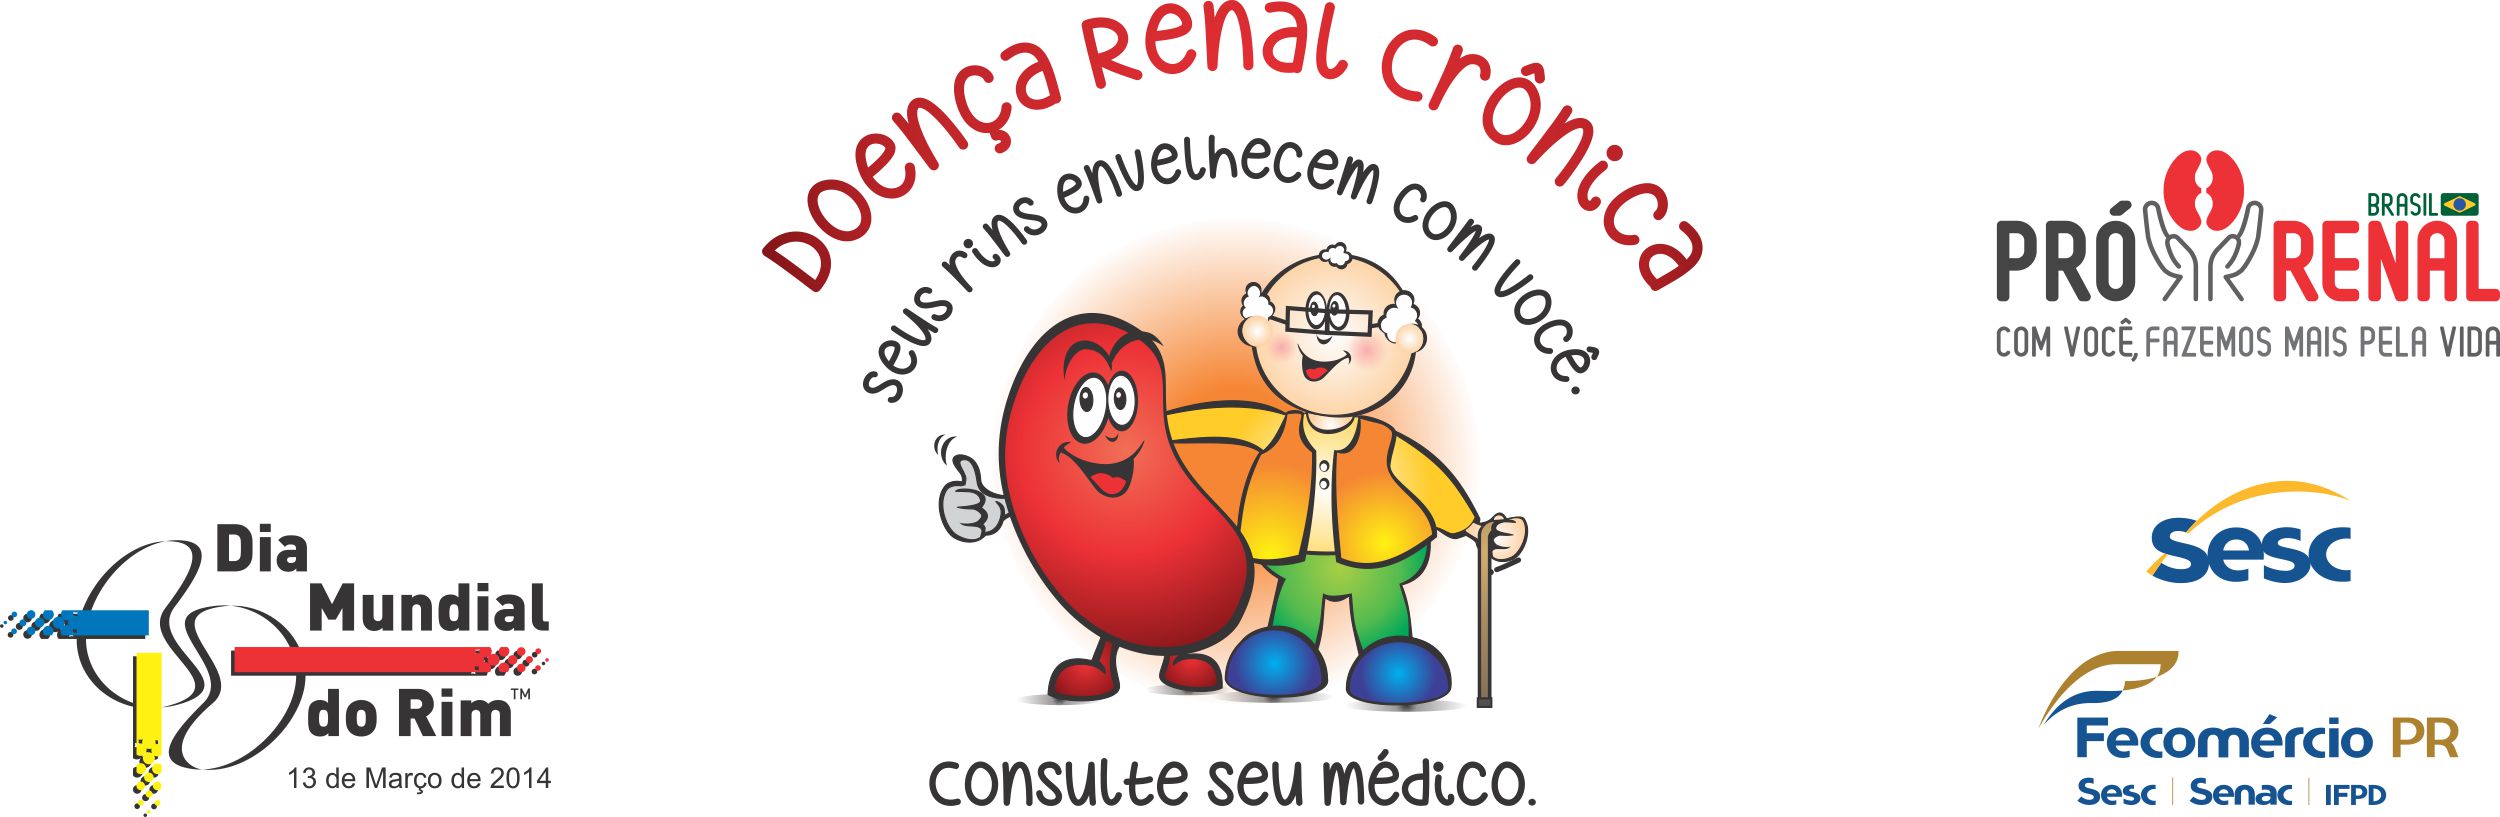 Campanha Dia Mundial do Rim 2014 “Doença Renal Crônica – Seus Rins Envelhecem com você. Consulte seu médico”